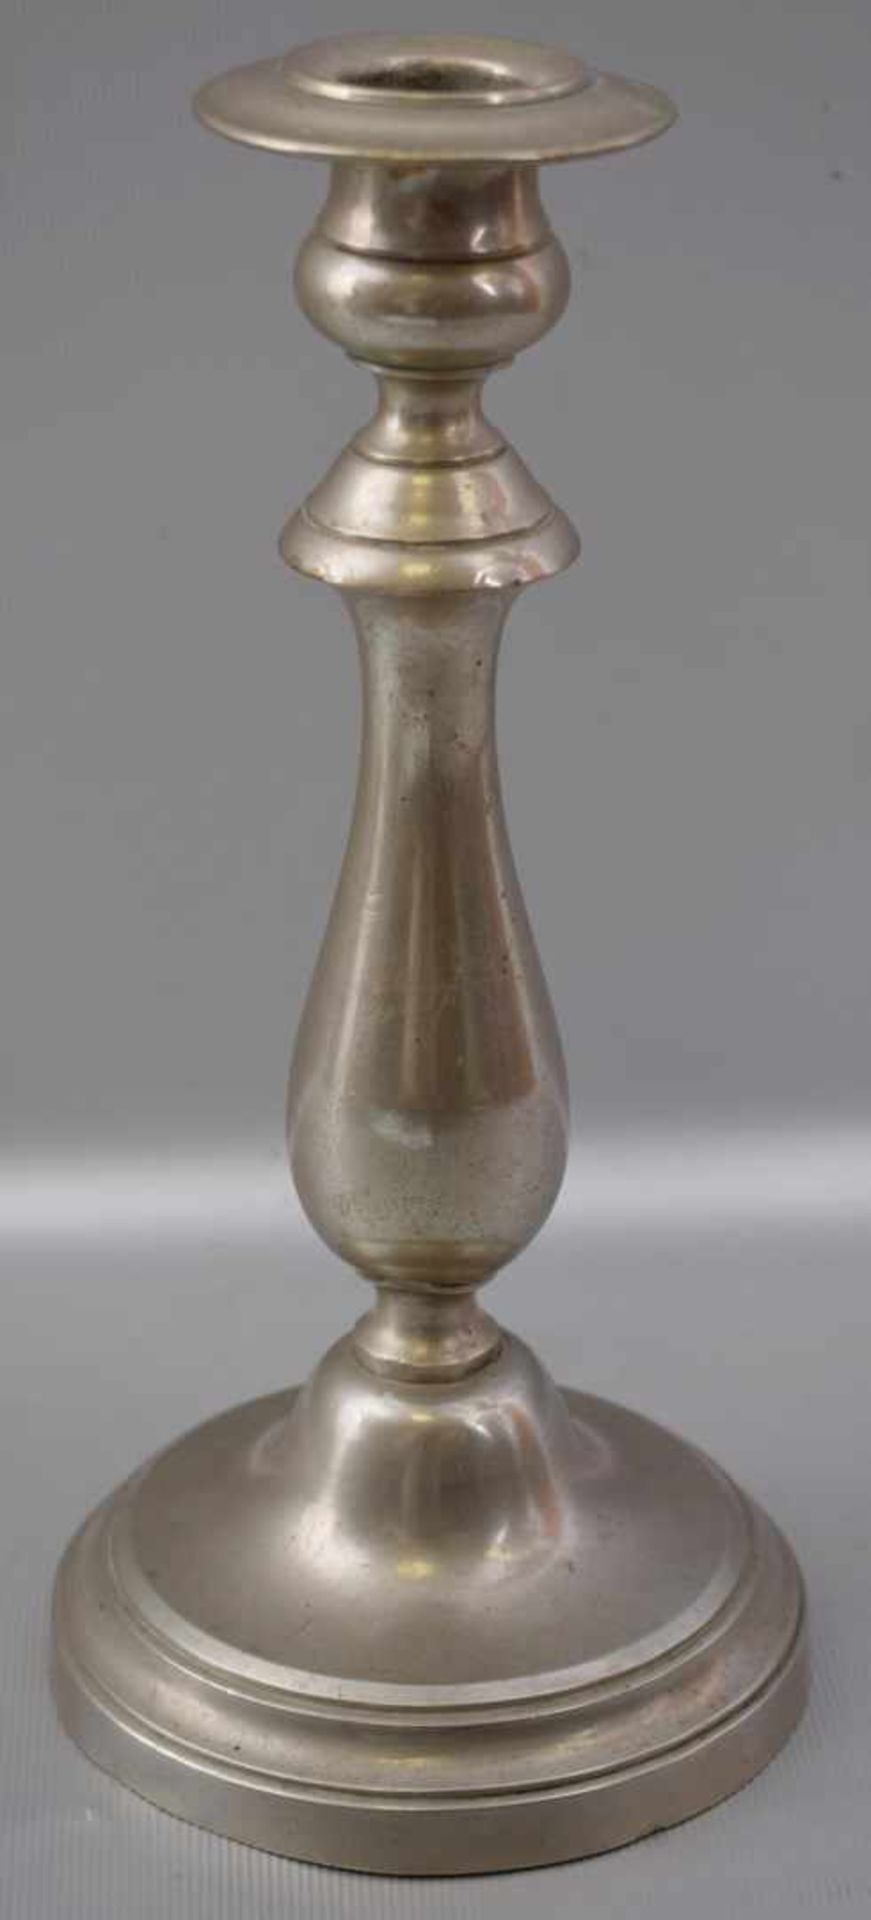 Biedermeier-Kerzenleuchter 1-lichtig, Weißmetall, runder Fuß und Schaft, H 22 cm, 19. Jh.